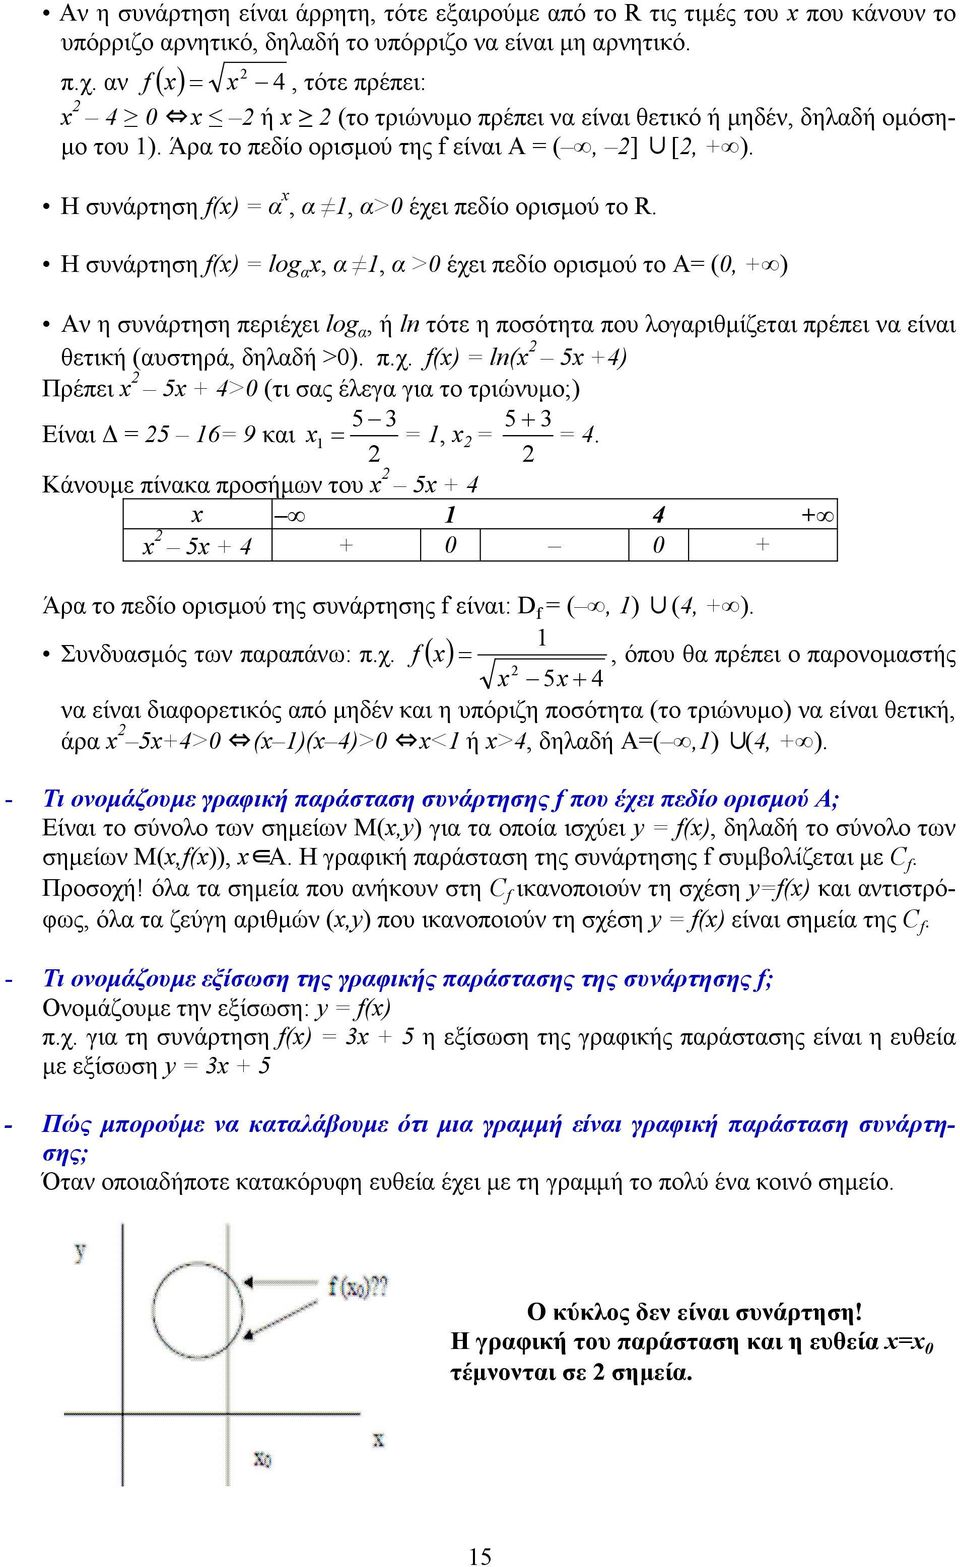 H συάρτηση f() = log α, α, α >0 έχει πεδίο ορισµού το Α= (0, + ) Α η συάρτηση περιέχει log α, ή ln τότε η ποσότητα που λογαριθµίζεται πρέπει α είαι θετική (αυστηρά, δηλαδή >0). π.χ. f() = ln( 5 +4) Πρέπει 5 + 4>0 (τι σας έλεγα για το τριώυµο;) 5 5+ Είαι = 5 6= 9 και = =, = = 4.